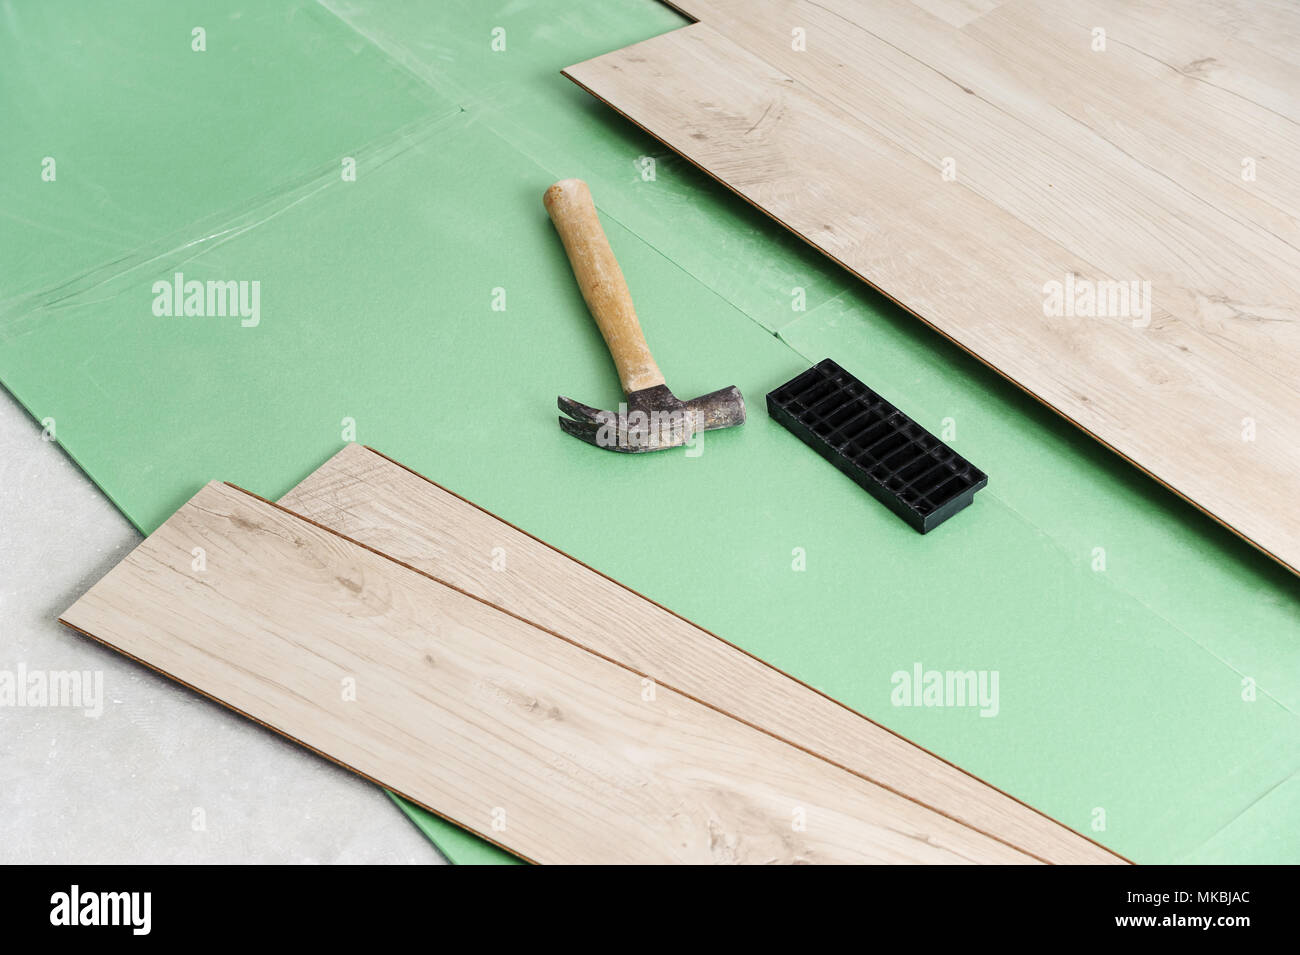 Installing Laminate Flooring Tools For Floor Installation Stock